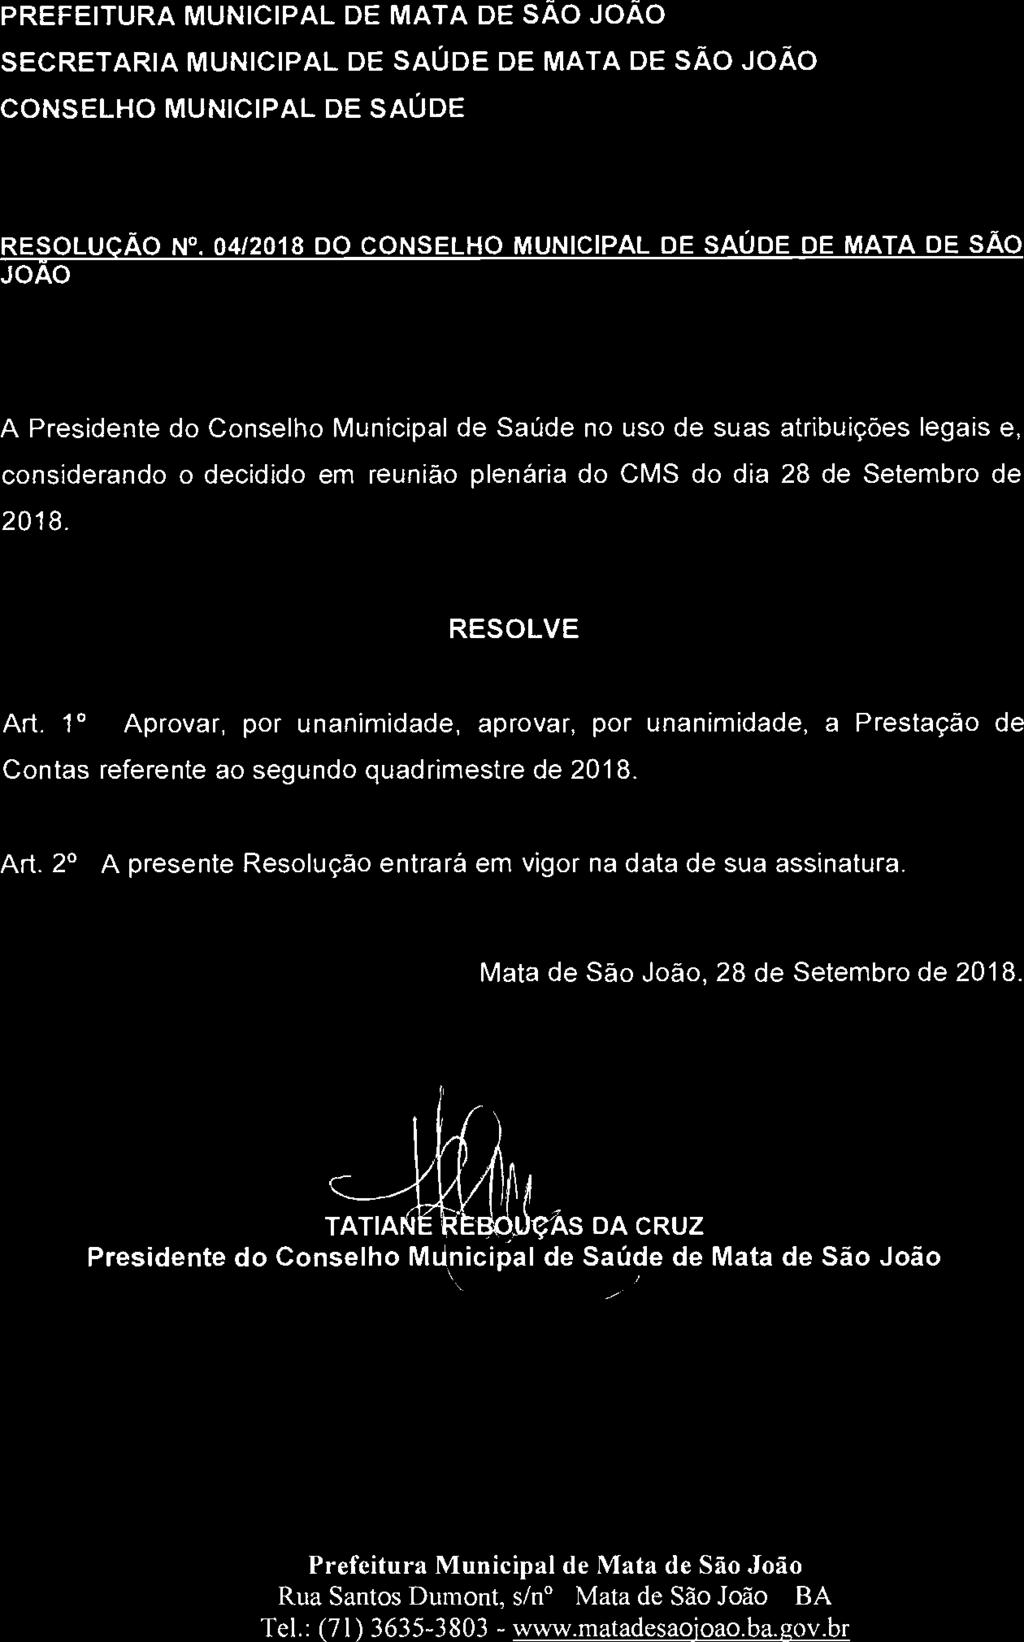 PREFEITURA MUNICIPAL DE MATA DE SÃO JOÃO SECRETARIA MUNICIPAL DE SAÚDE DE MATA DE SÃO JOÃO CONSELHO MUNICIPAL DE SAÚDE RESOLUÇÃO N.